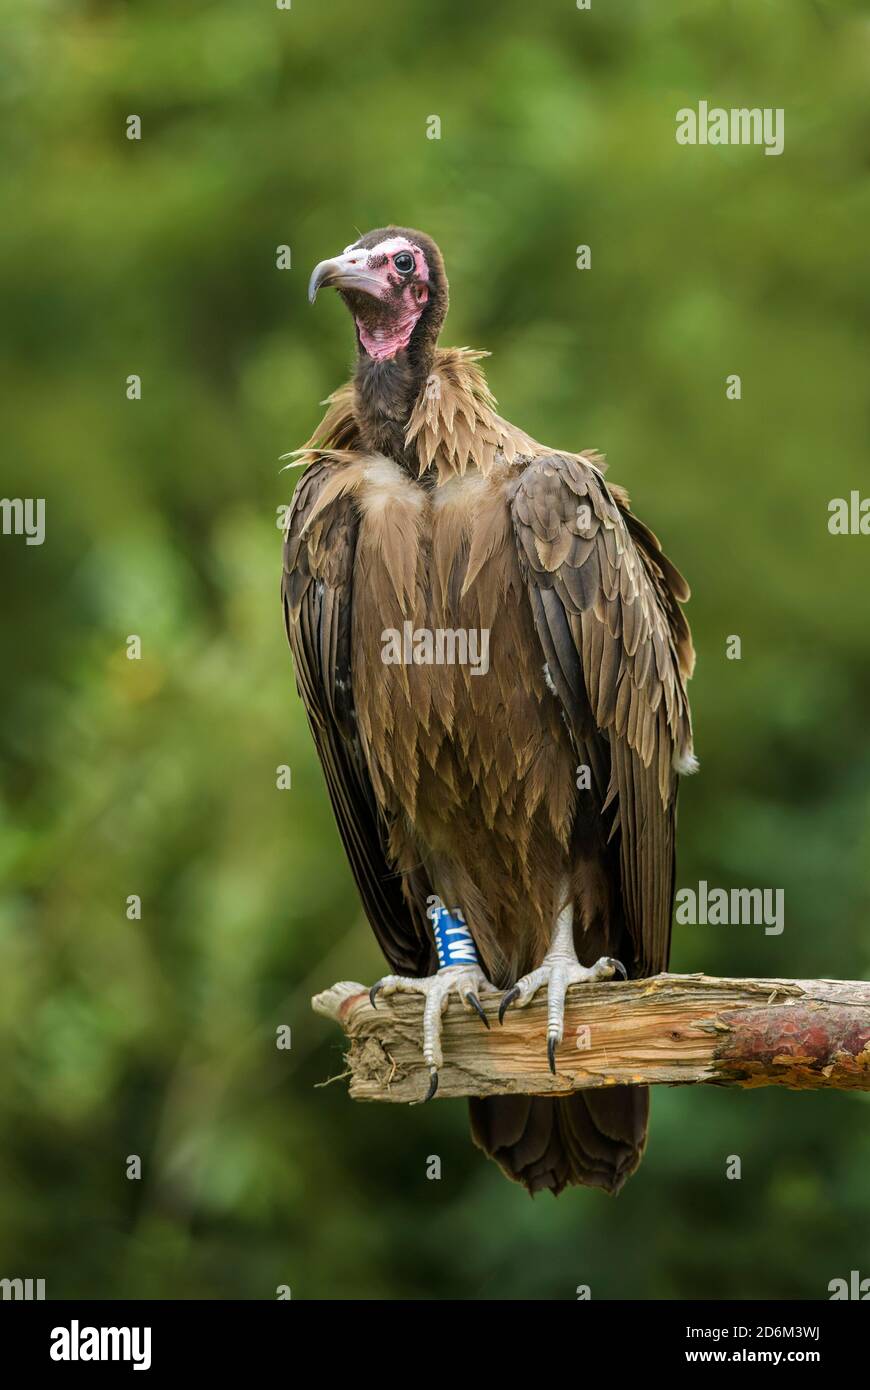 Vautour à capuchon - Necrosyrtes monachus, espèce de vautour du Vieux-monde en danger critique provenant de forêts et de terres boisées africaines, Éthiopie. Banque D'Images